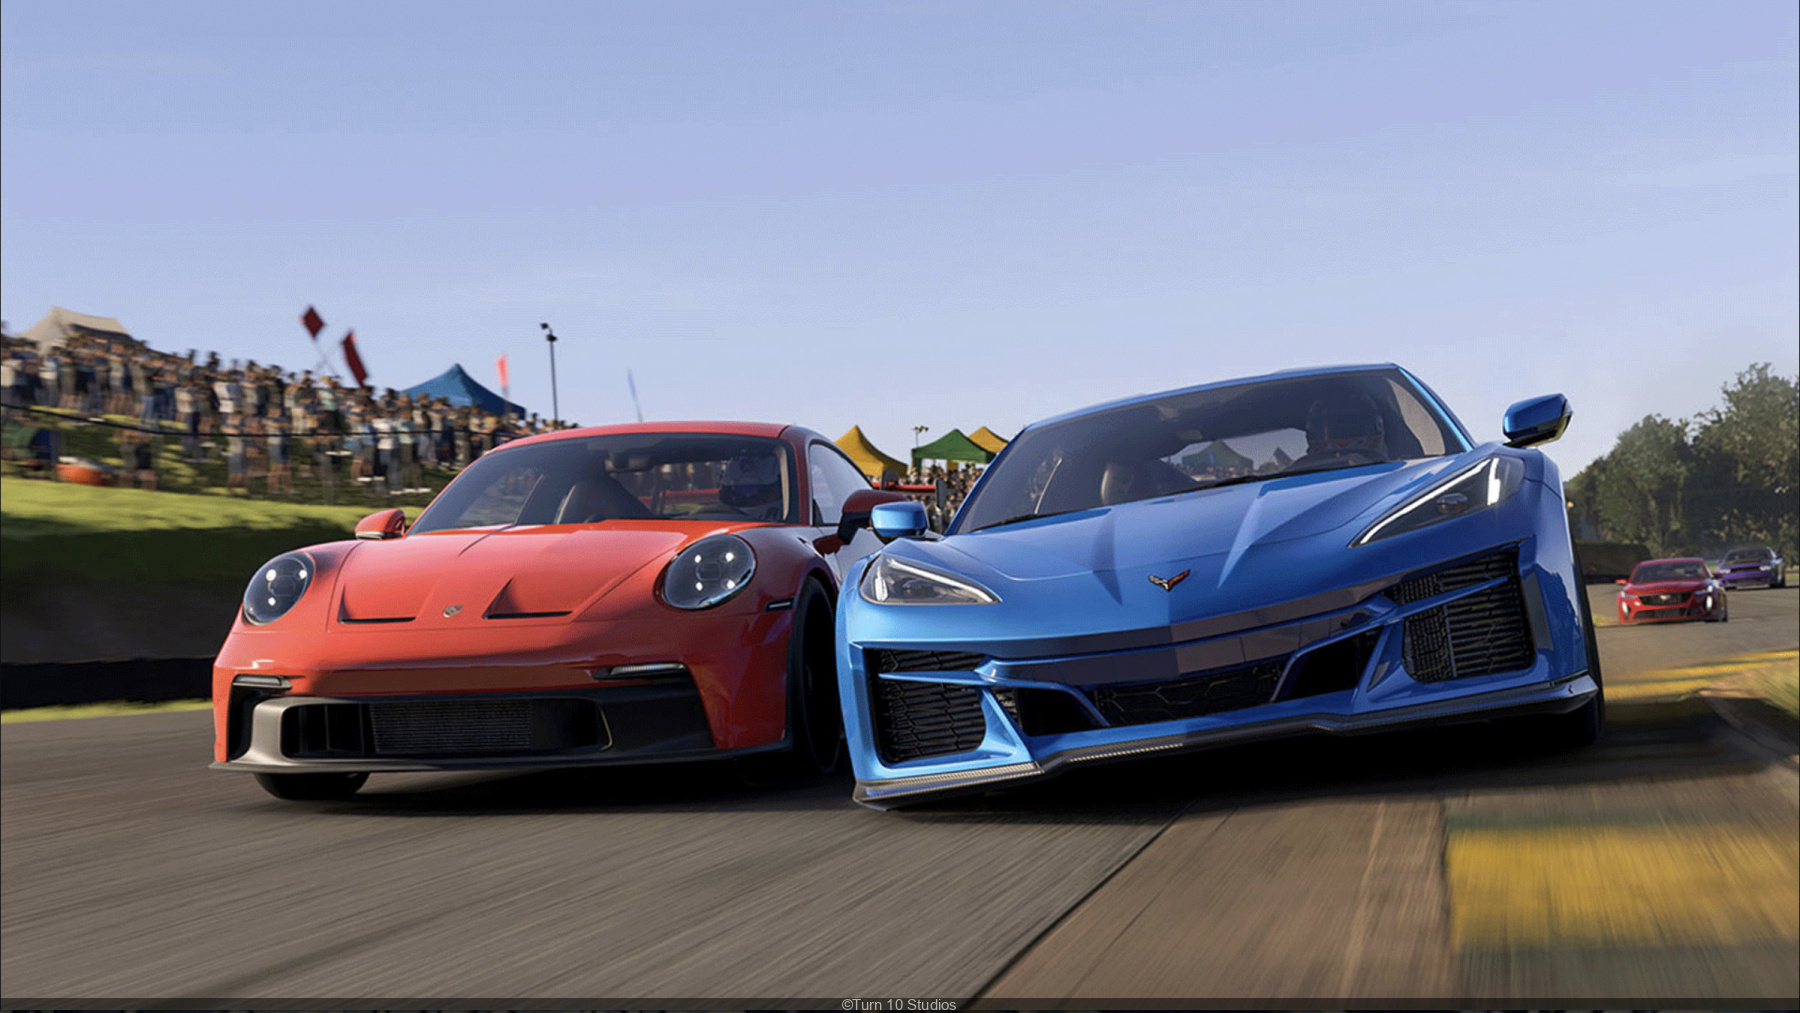 Forza Motorsport 8 (XBOX ONE) preço mais barato: €